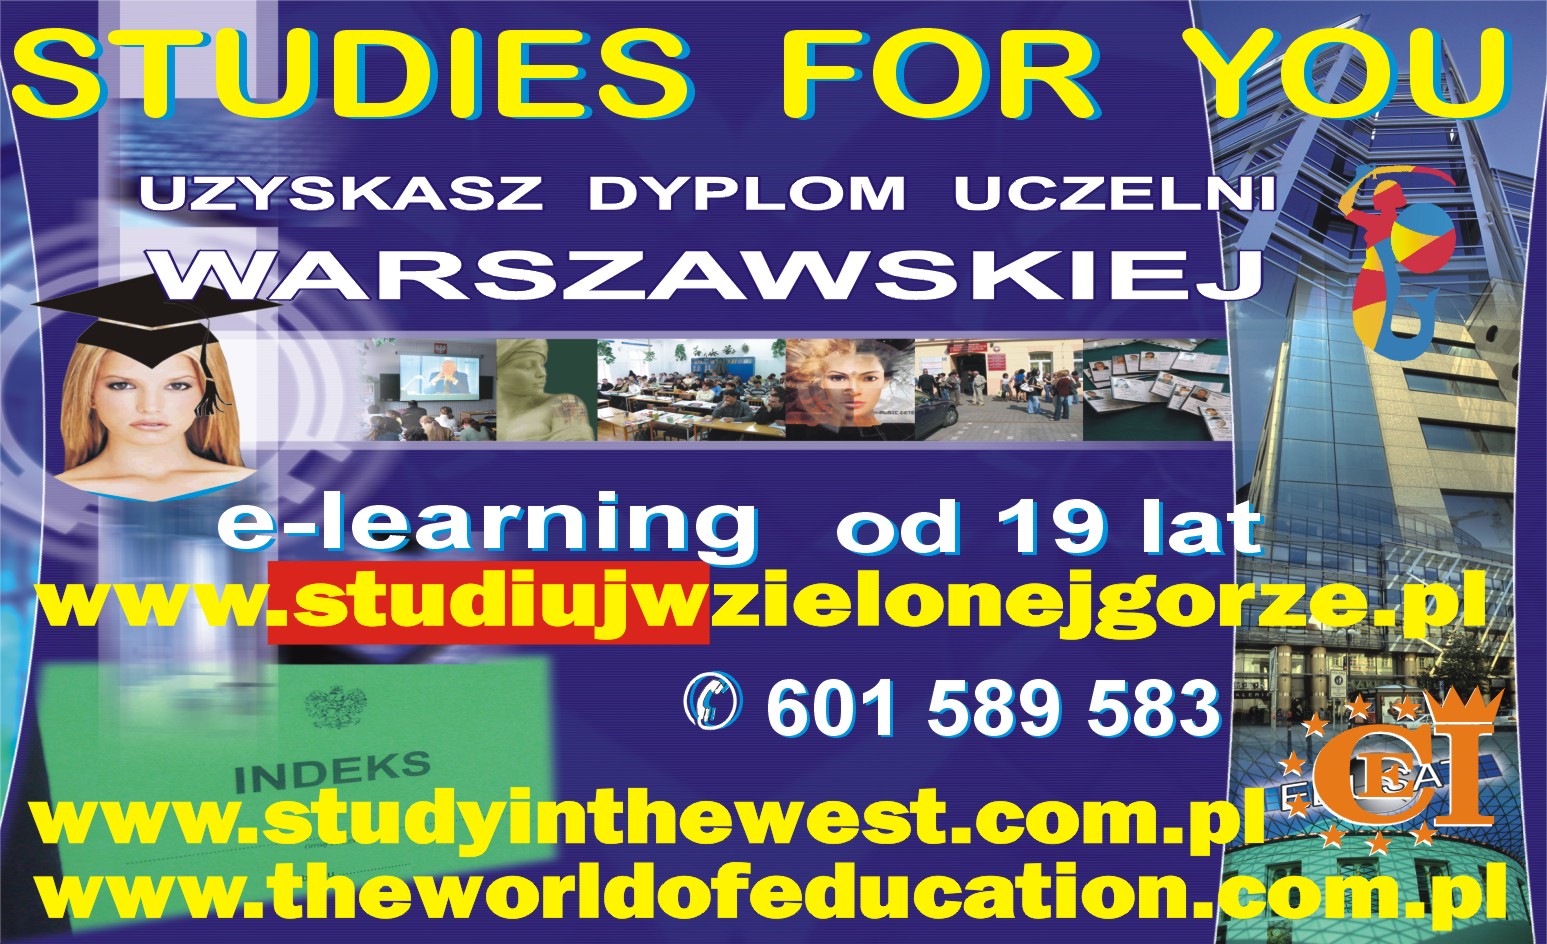 www.studiujwlubsku.pl